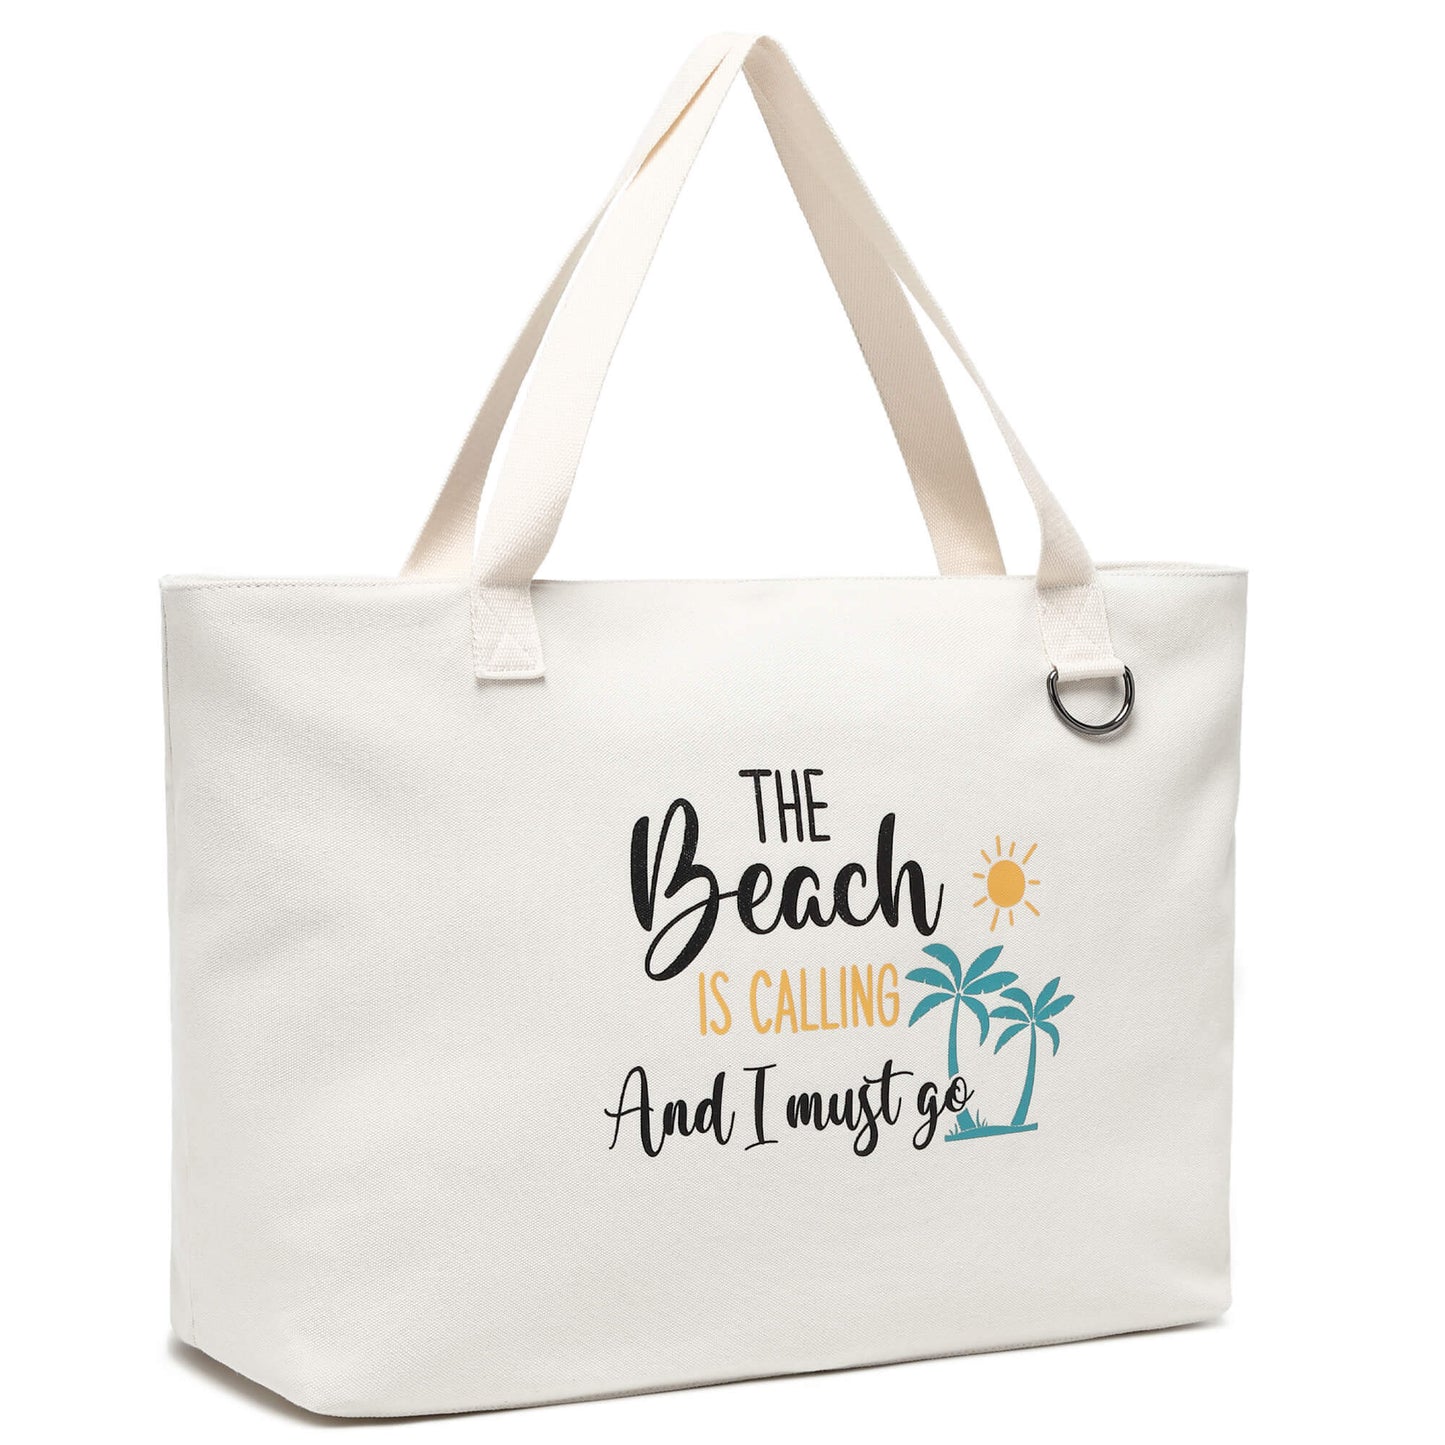 Jansben-canvas-beach-bag-C057-beach-is-calling-side